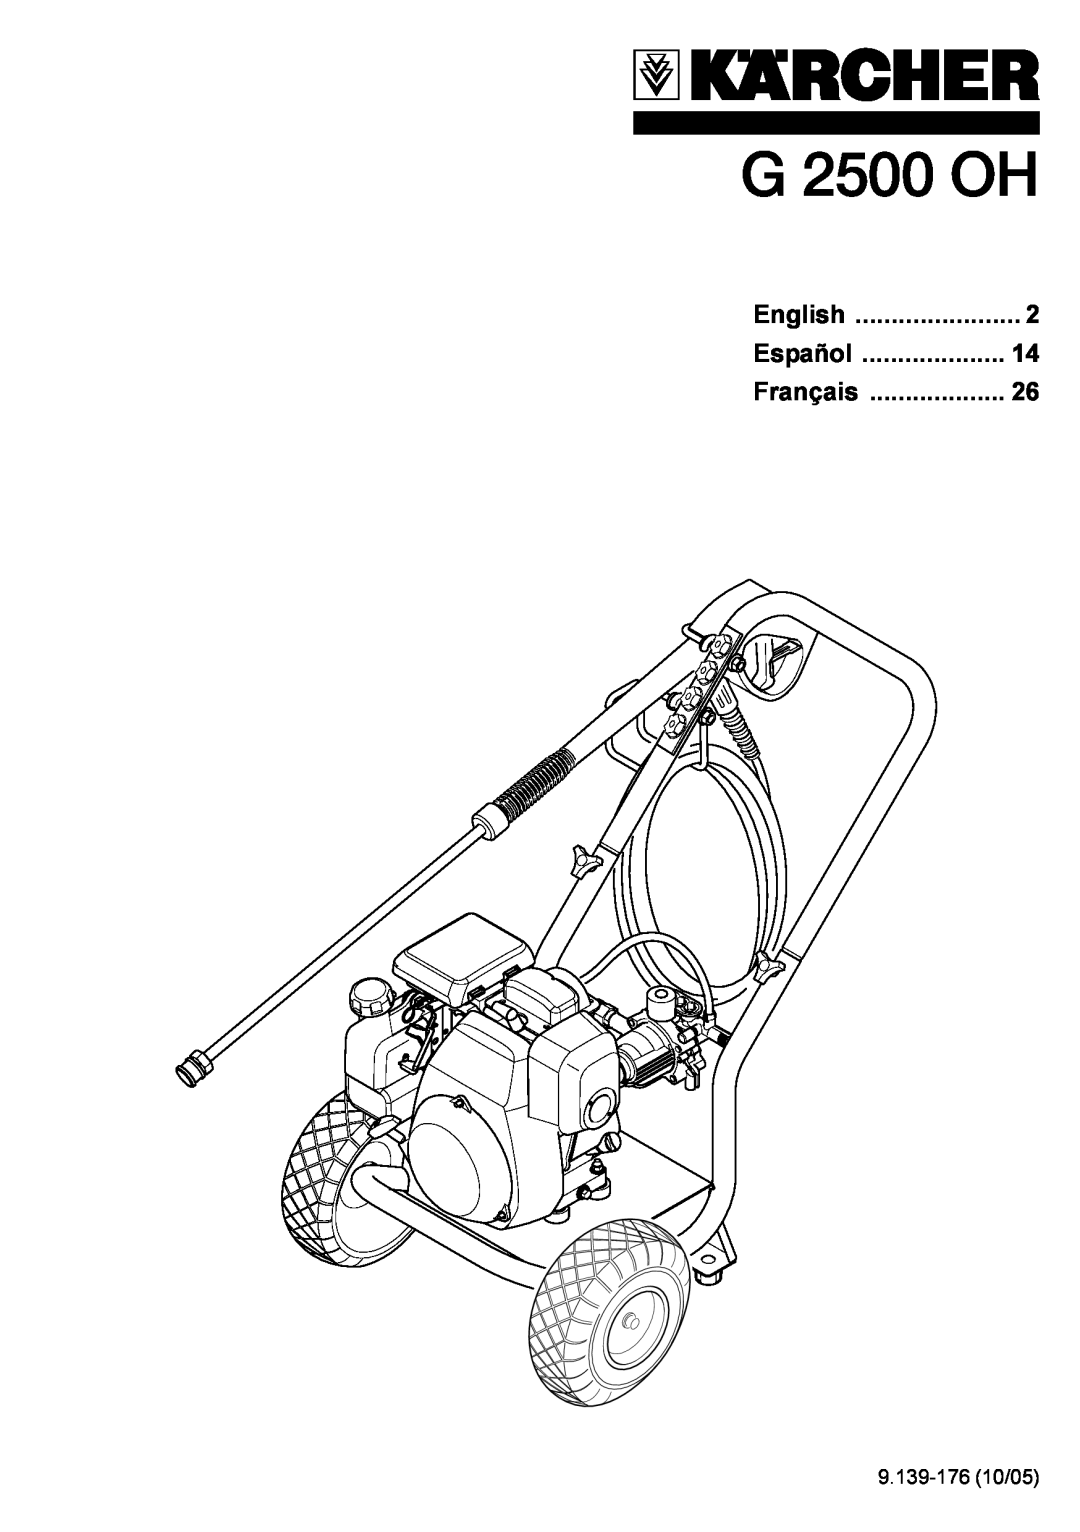 Karcher G 2500 OH manual 